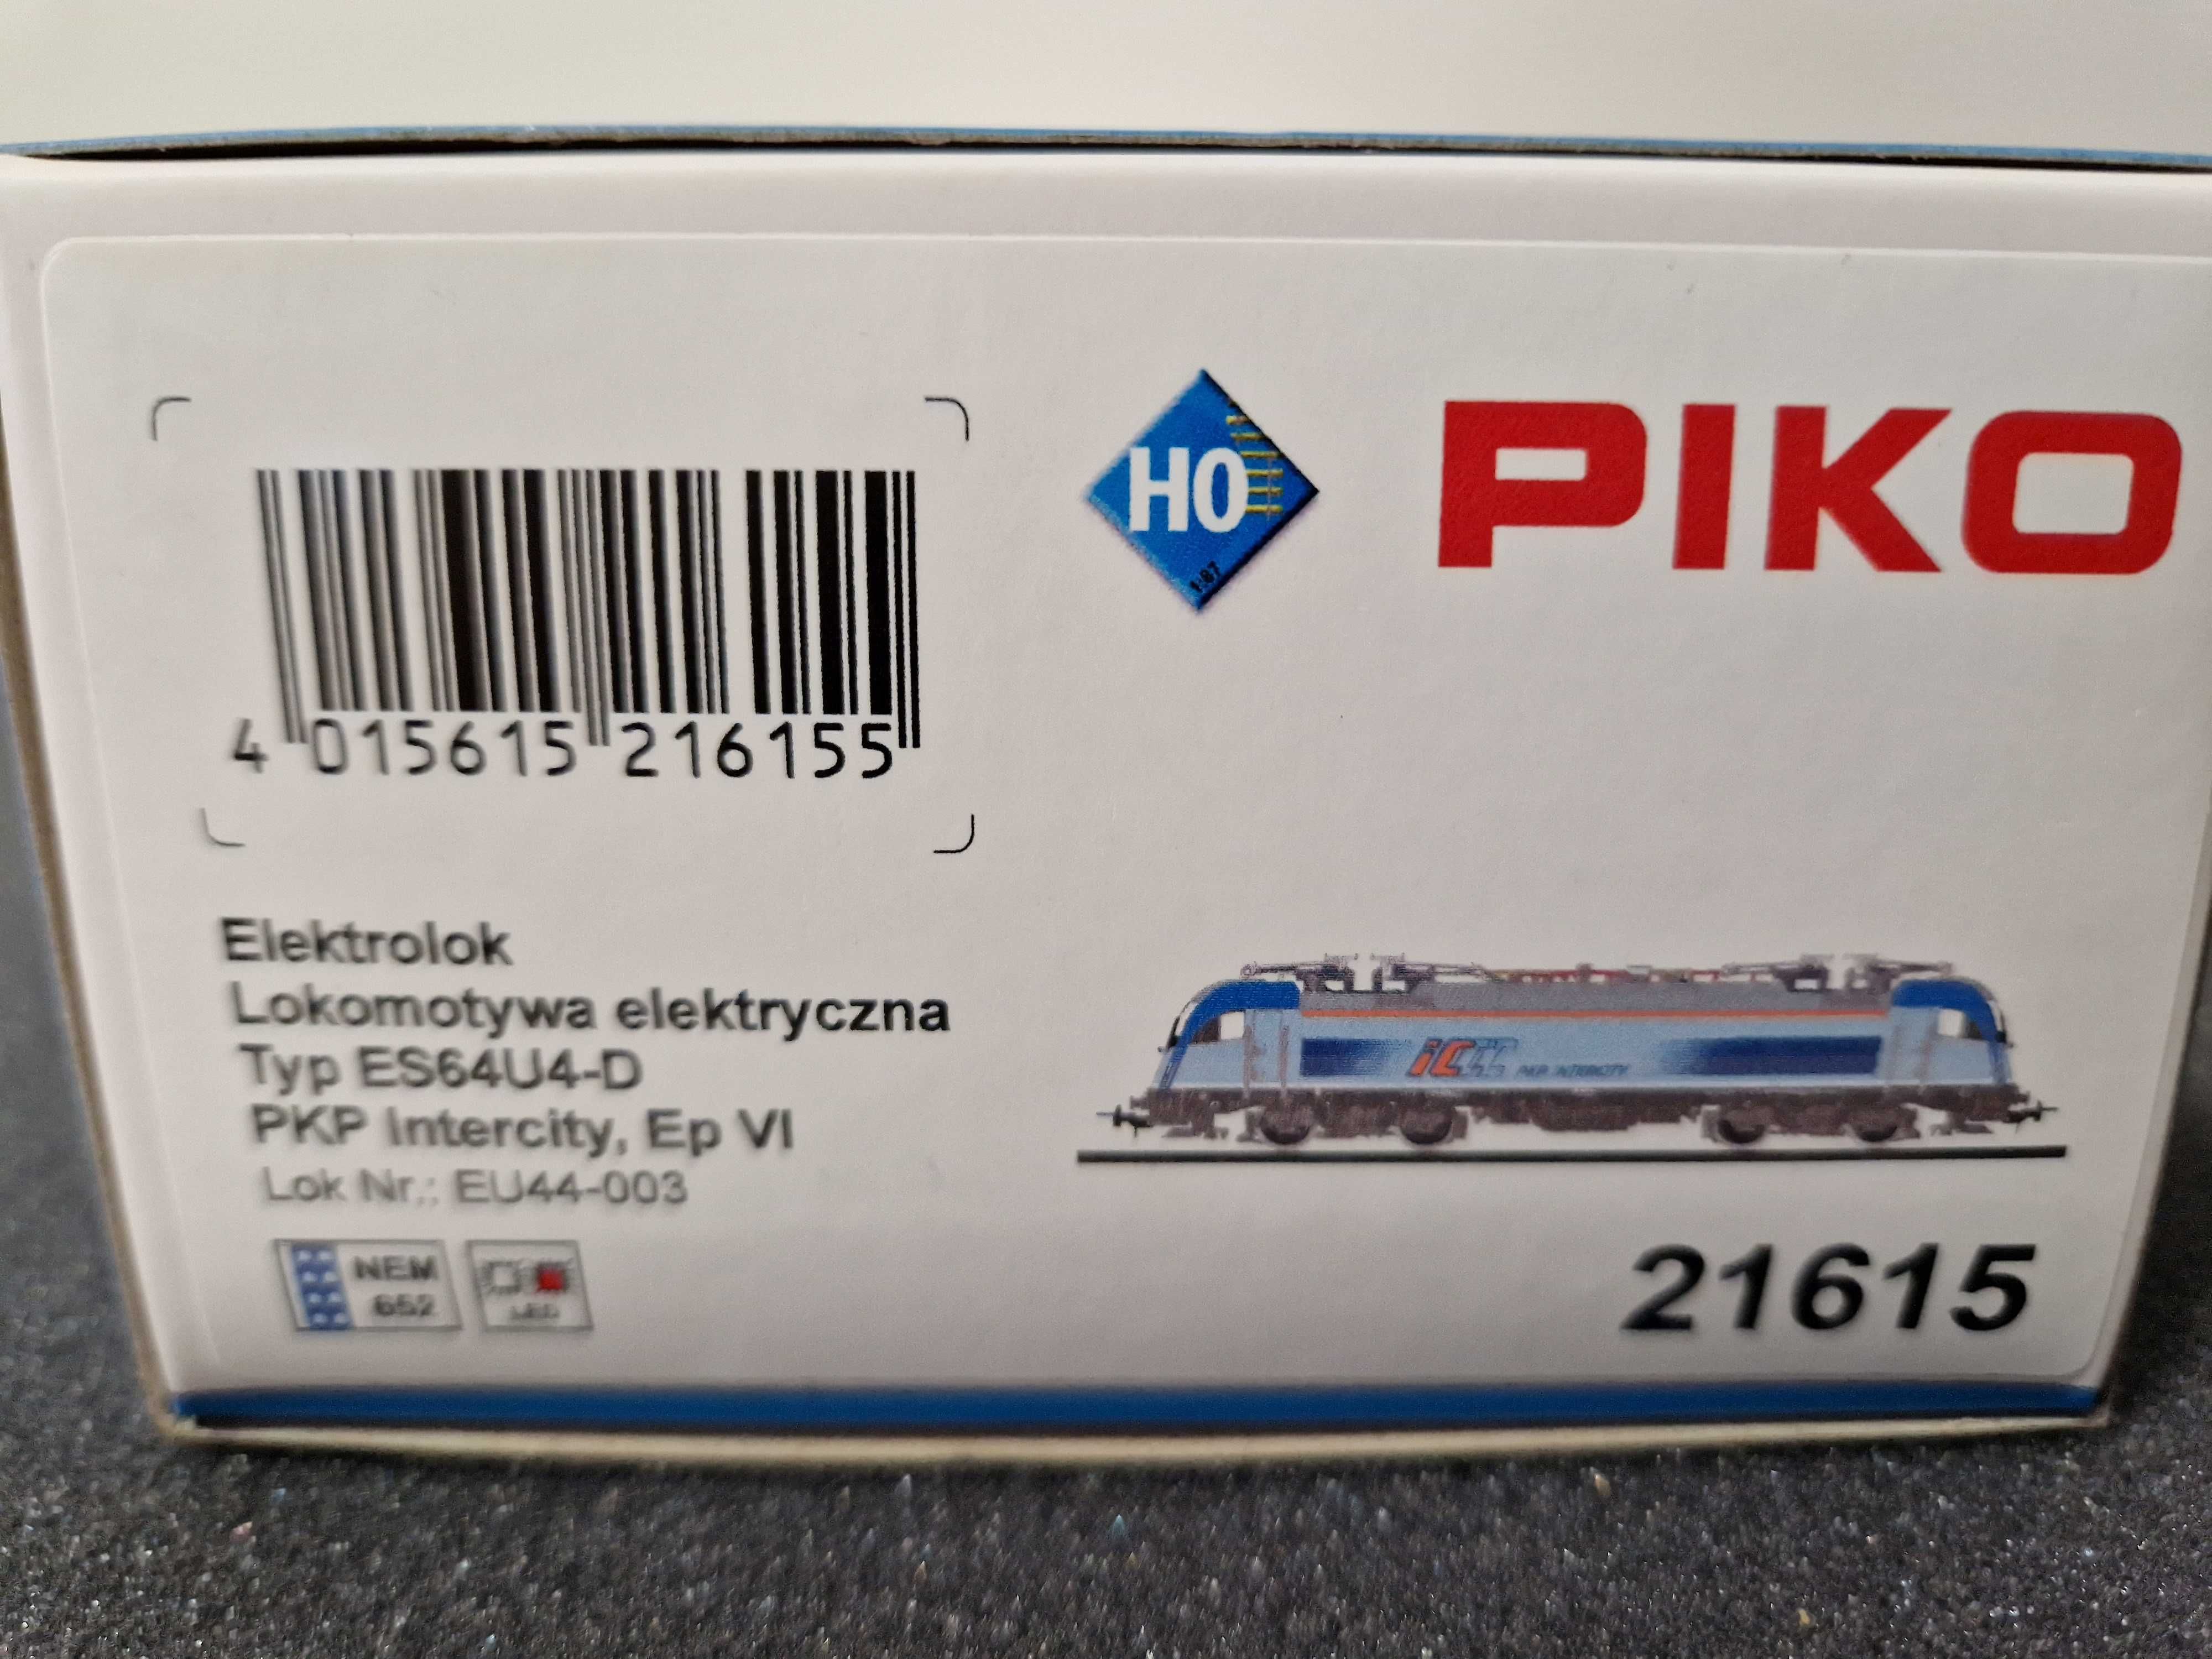 PIKO Lokomotywa EU44-003 HUSARZ PKP InterCity (21615), nie ROCO